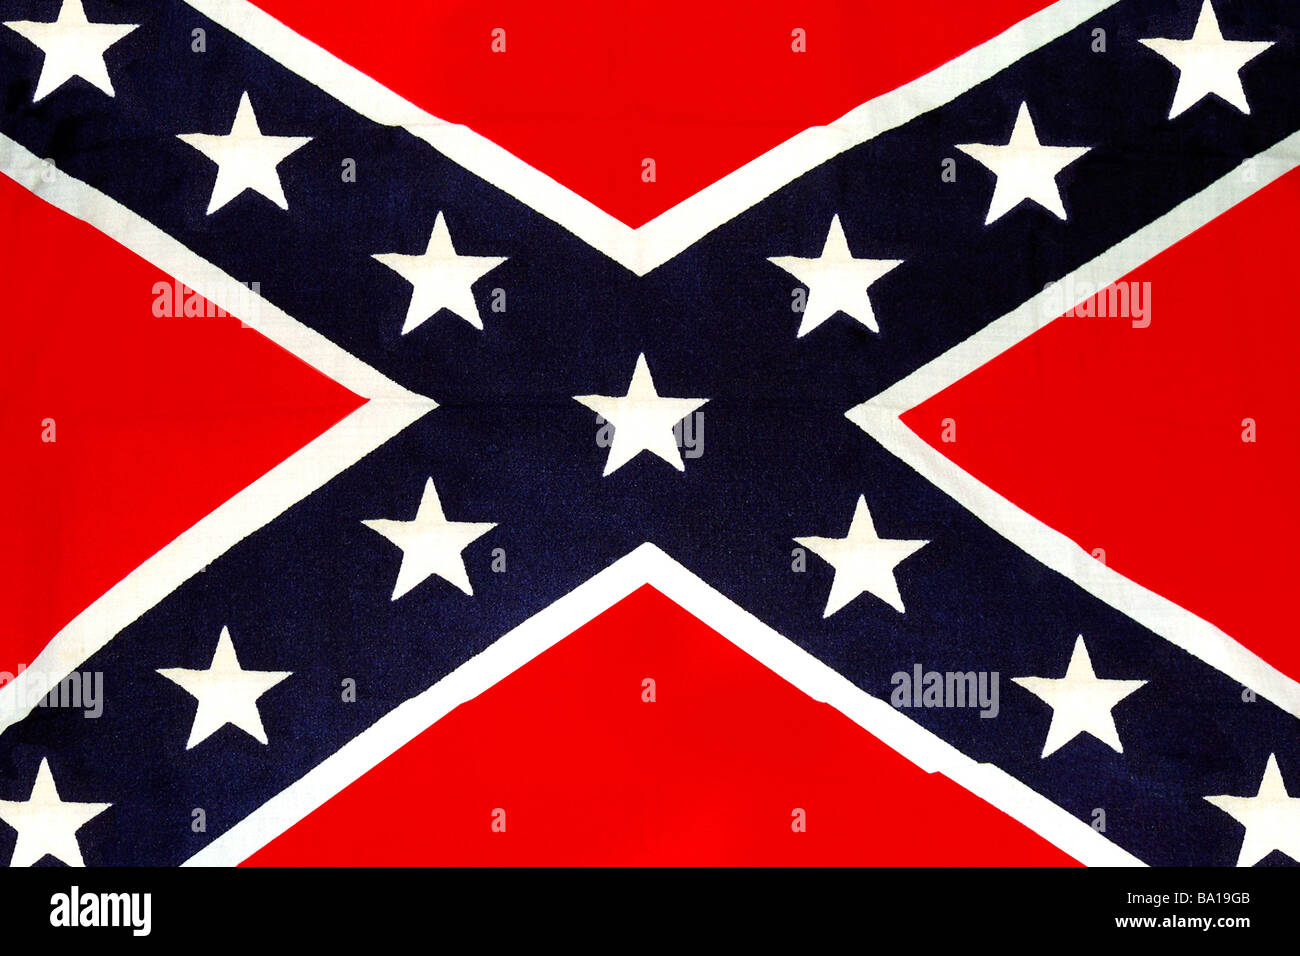 La bandiera confederate del Sud anche se non più legalmente riconosciuta con bandiera sin dalla fine della guerra civile nel 1865 Foto Stock